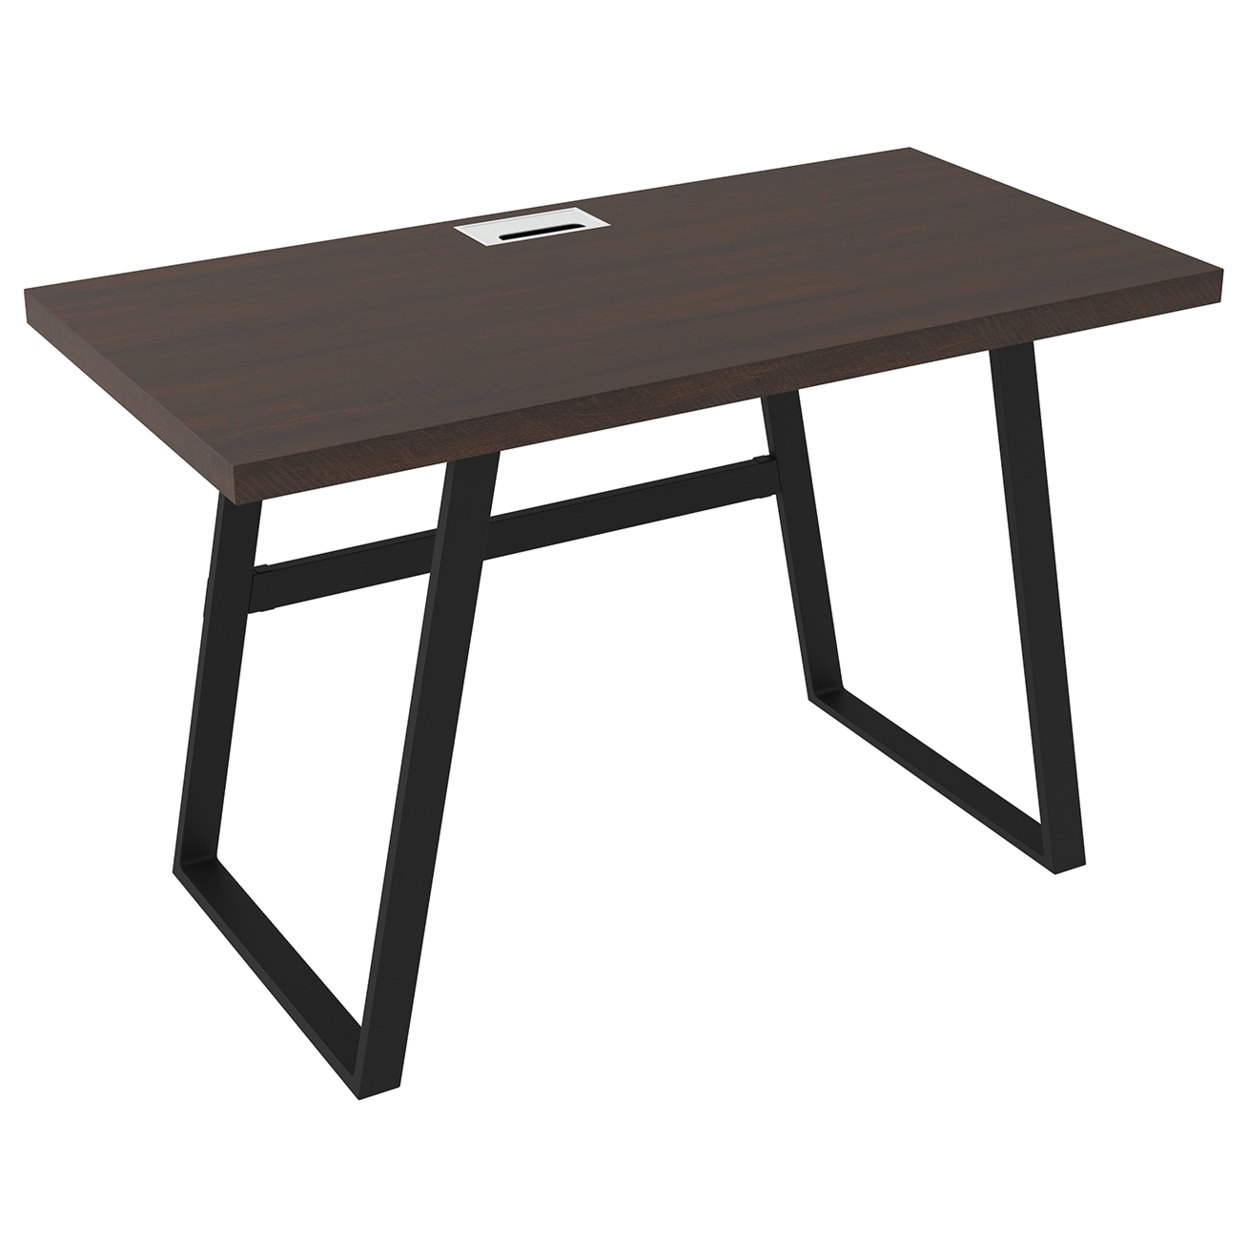 Rectangular Top Wooden Writing Desk With Metal Base, Dark Brown And Black- Saltoro Sherpi